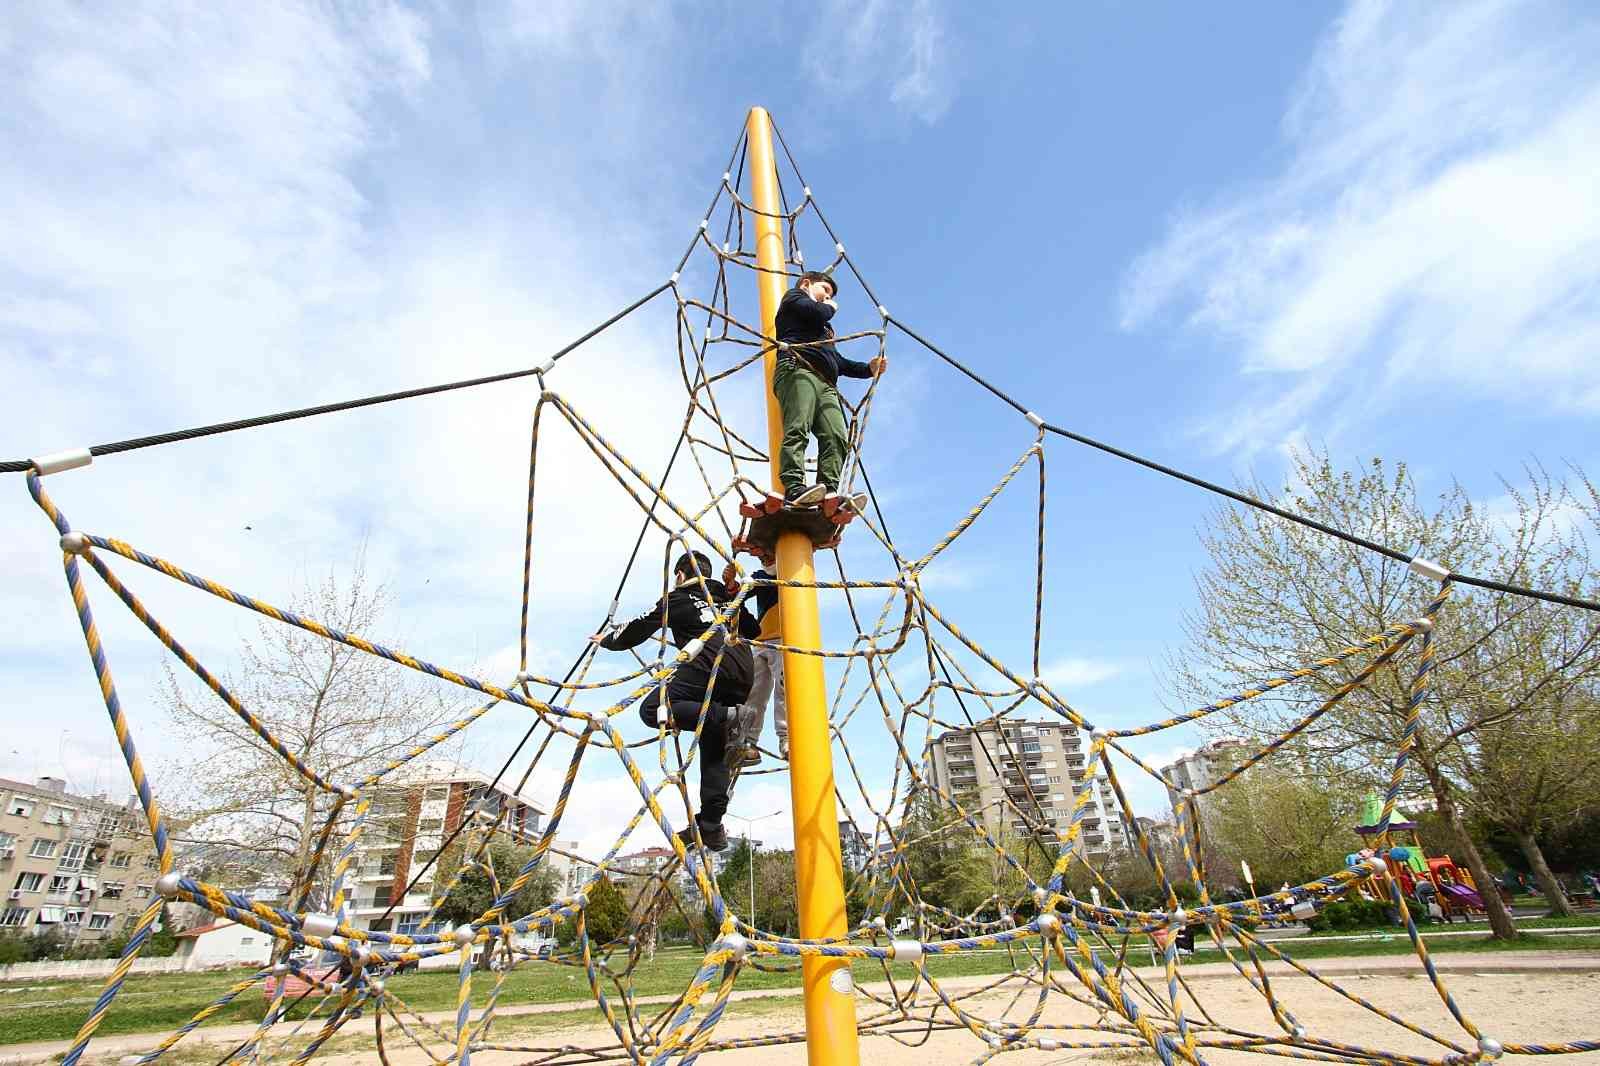 Bayraklı’nın parklarını ‘çocuklar’ tasarlayacak #izmir